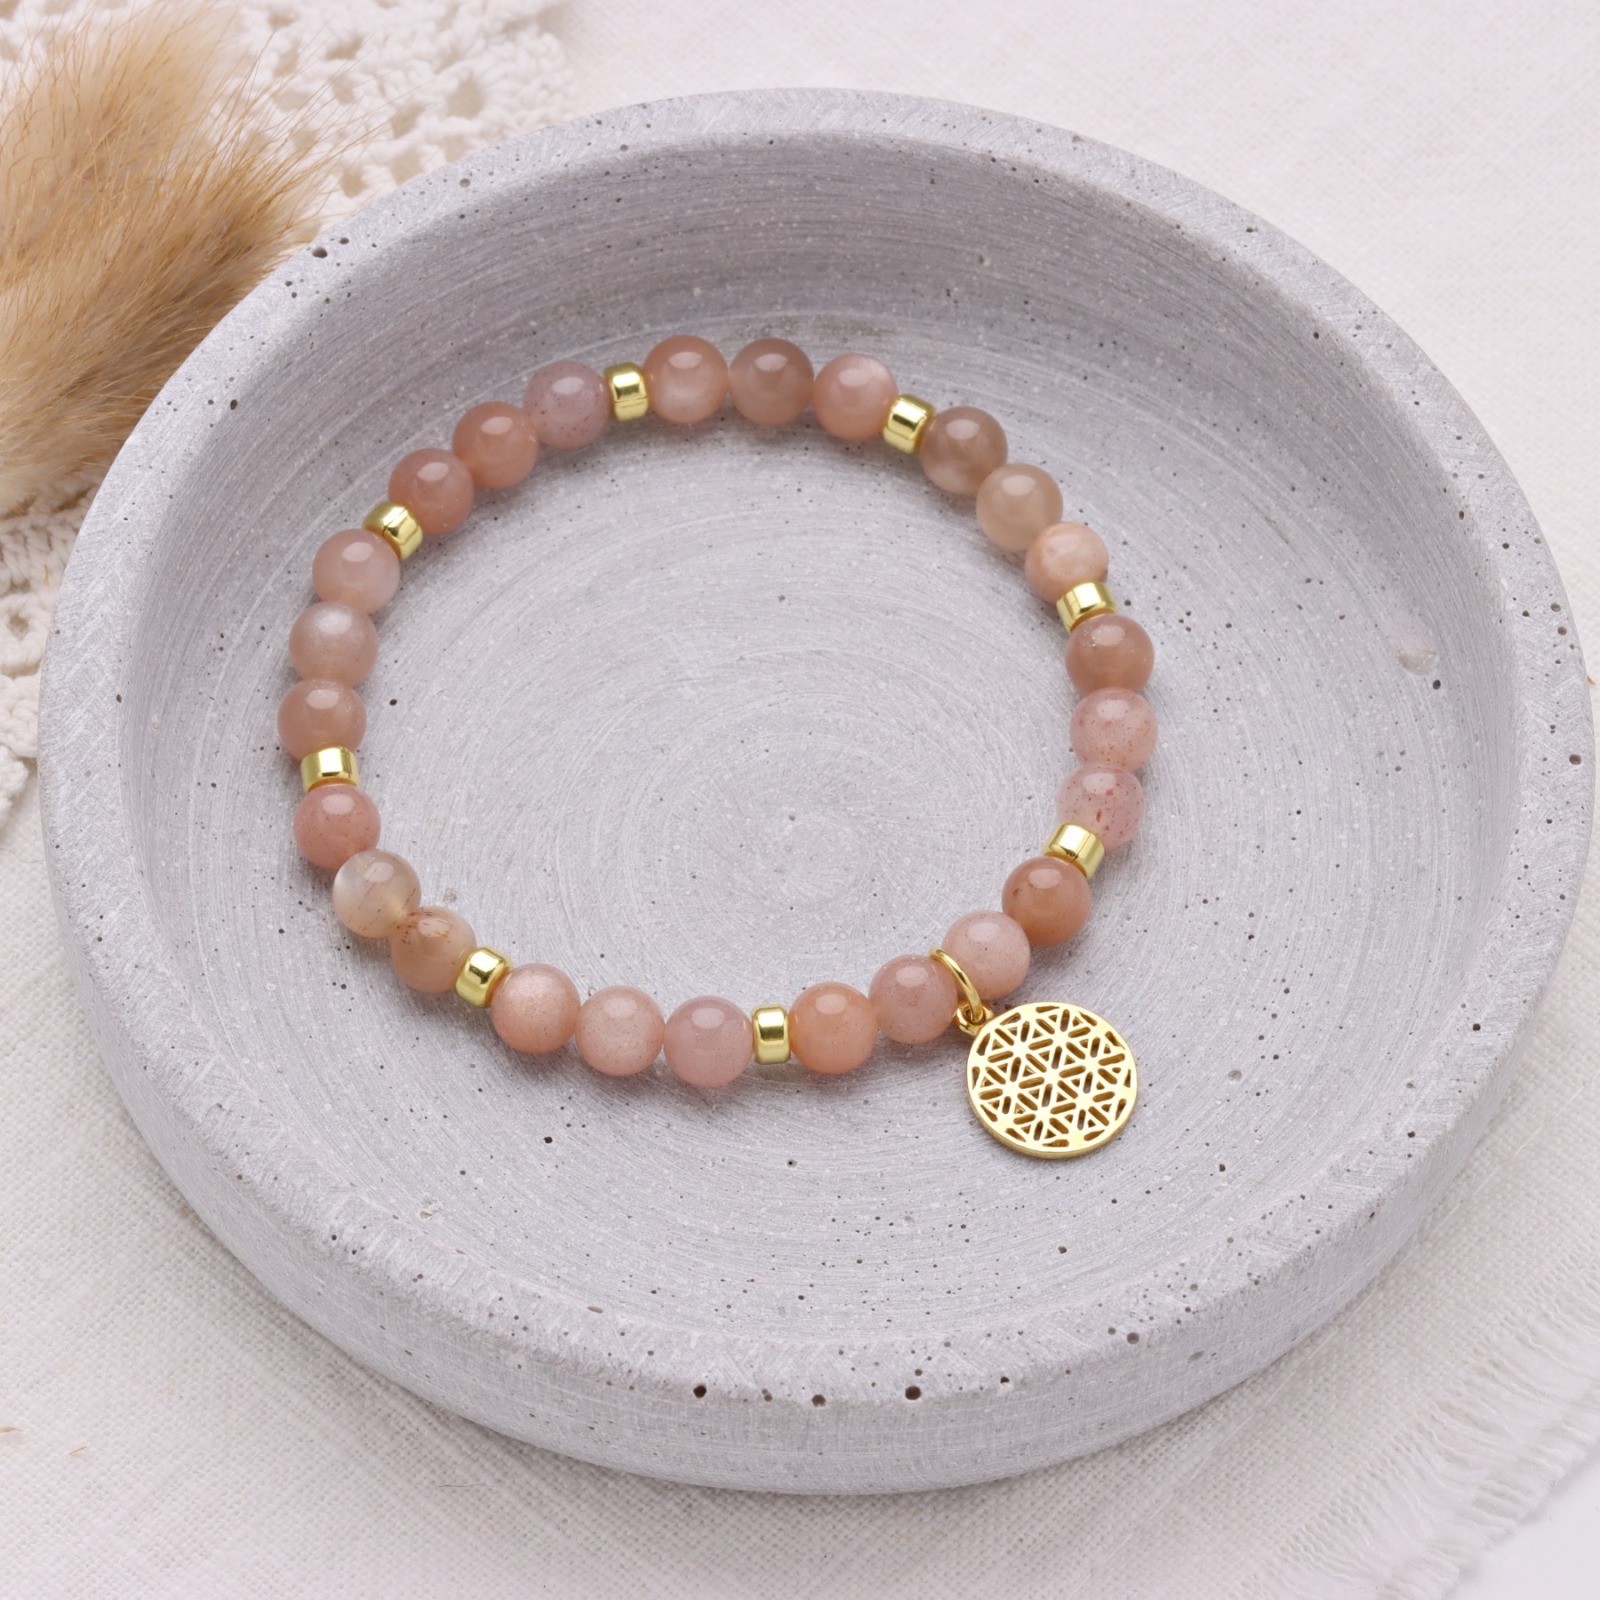 Lebensblume Armband aus Mondstein rosè-beige, 925 Silber oder vergoldet, perfektes Geschenk für